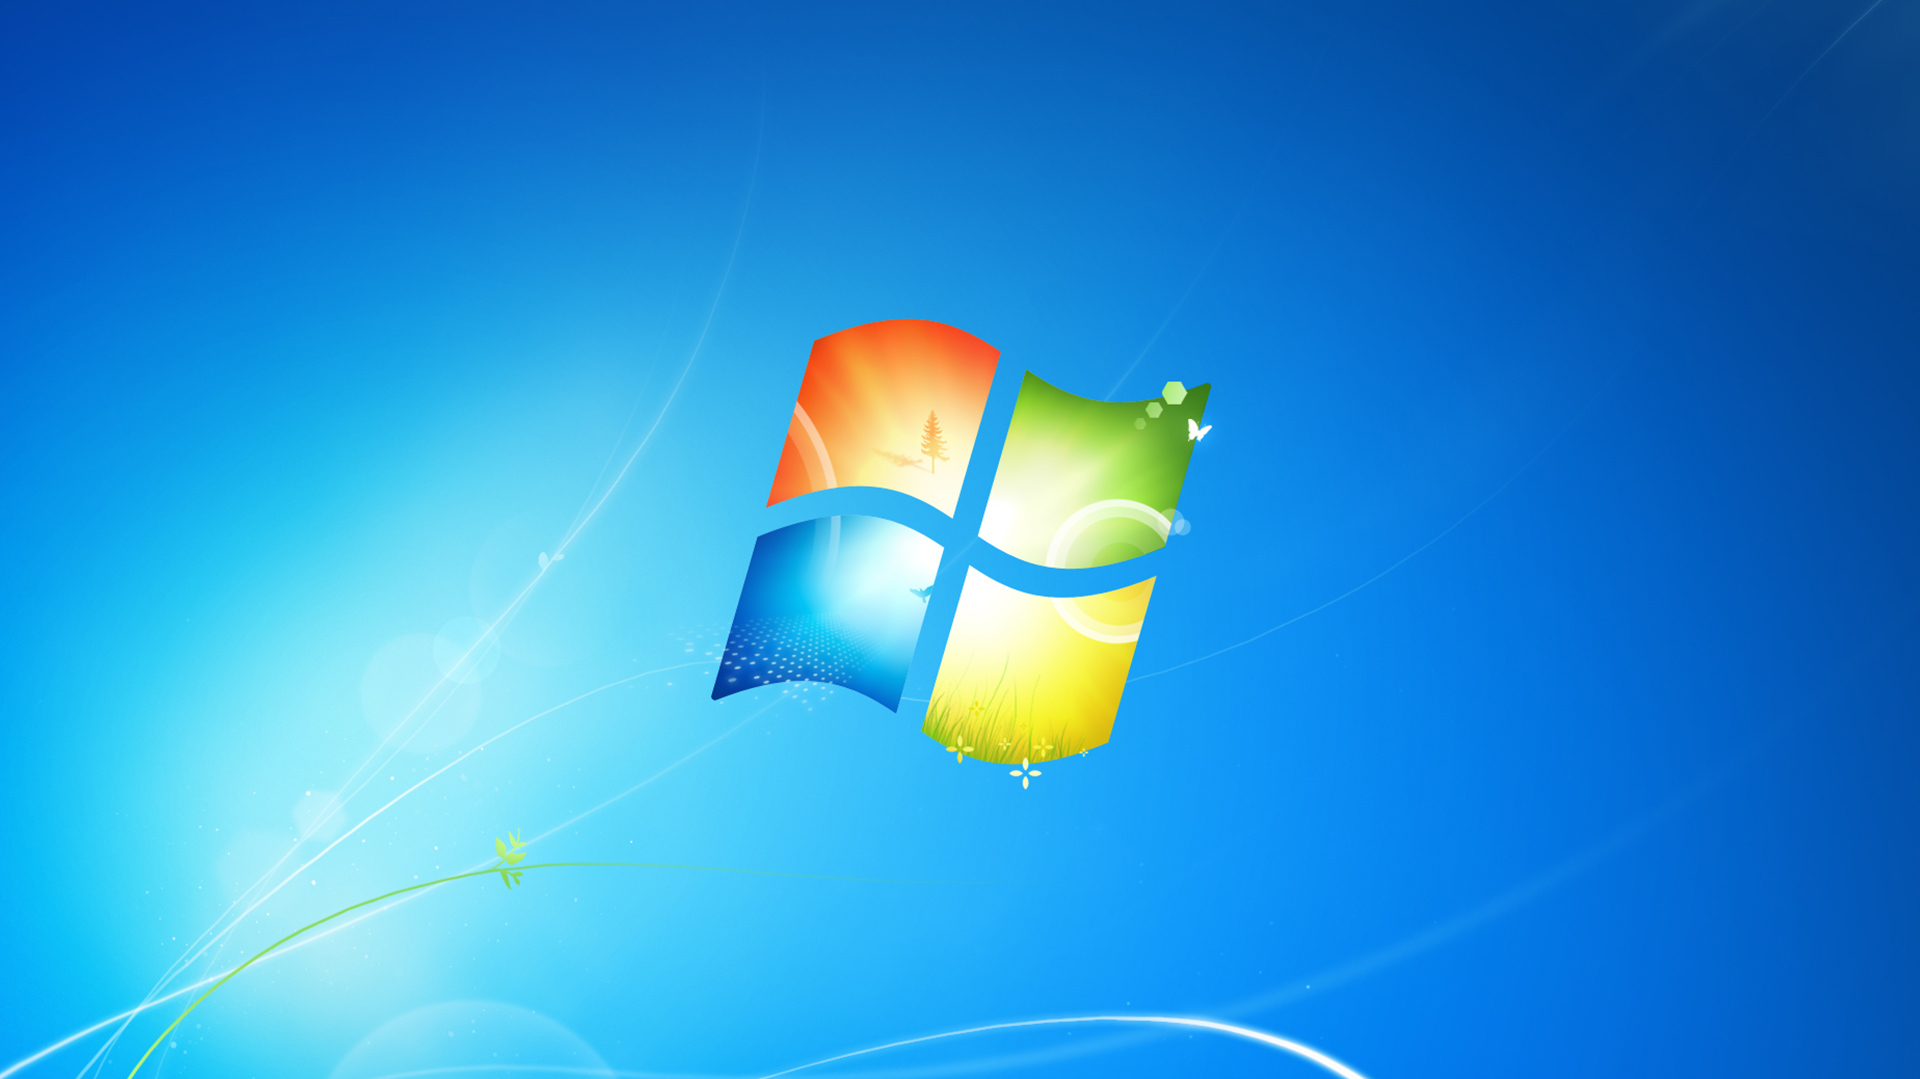 Windows 7 Key auslesen - so geht's | heise online